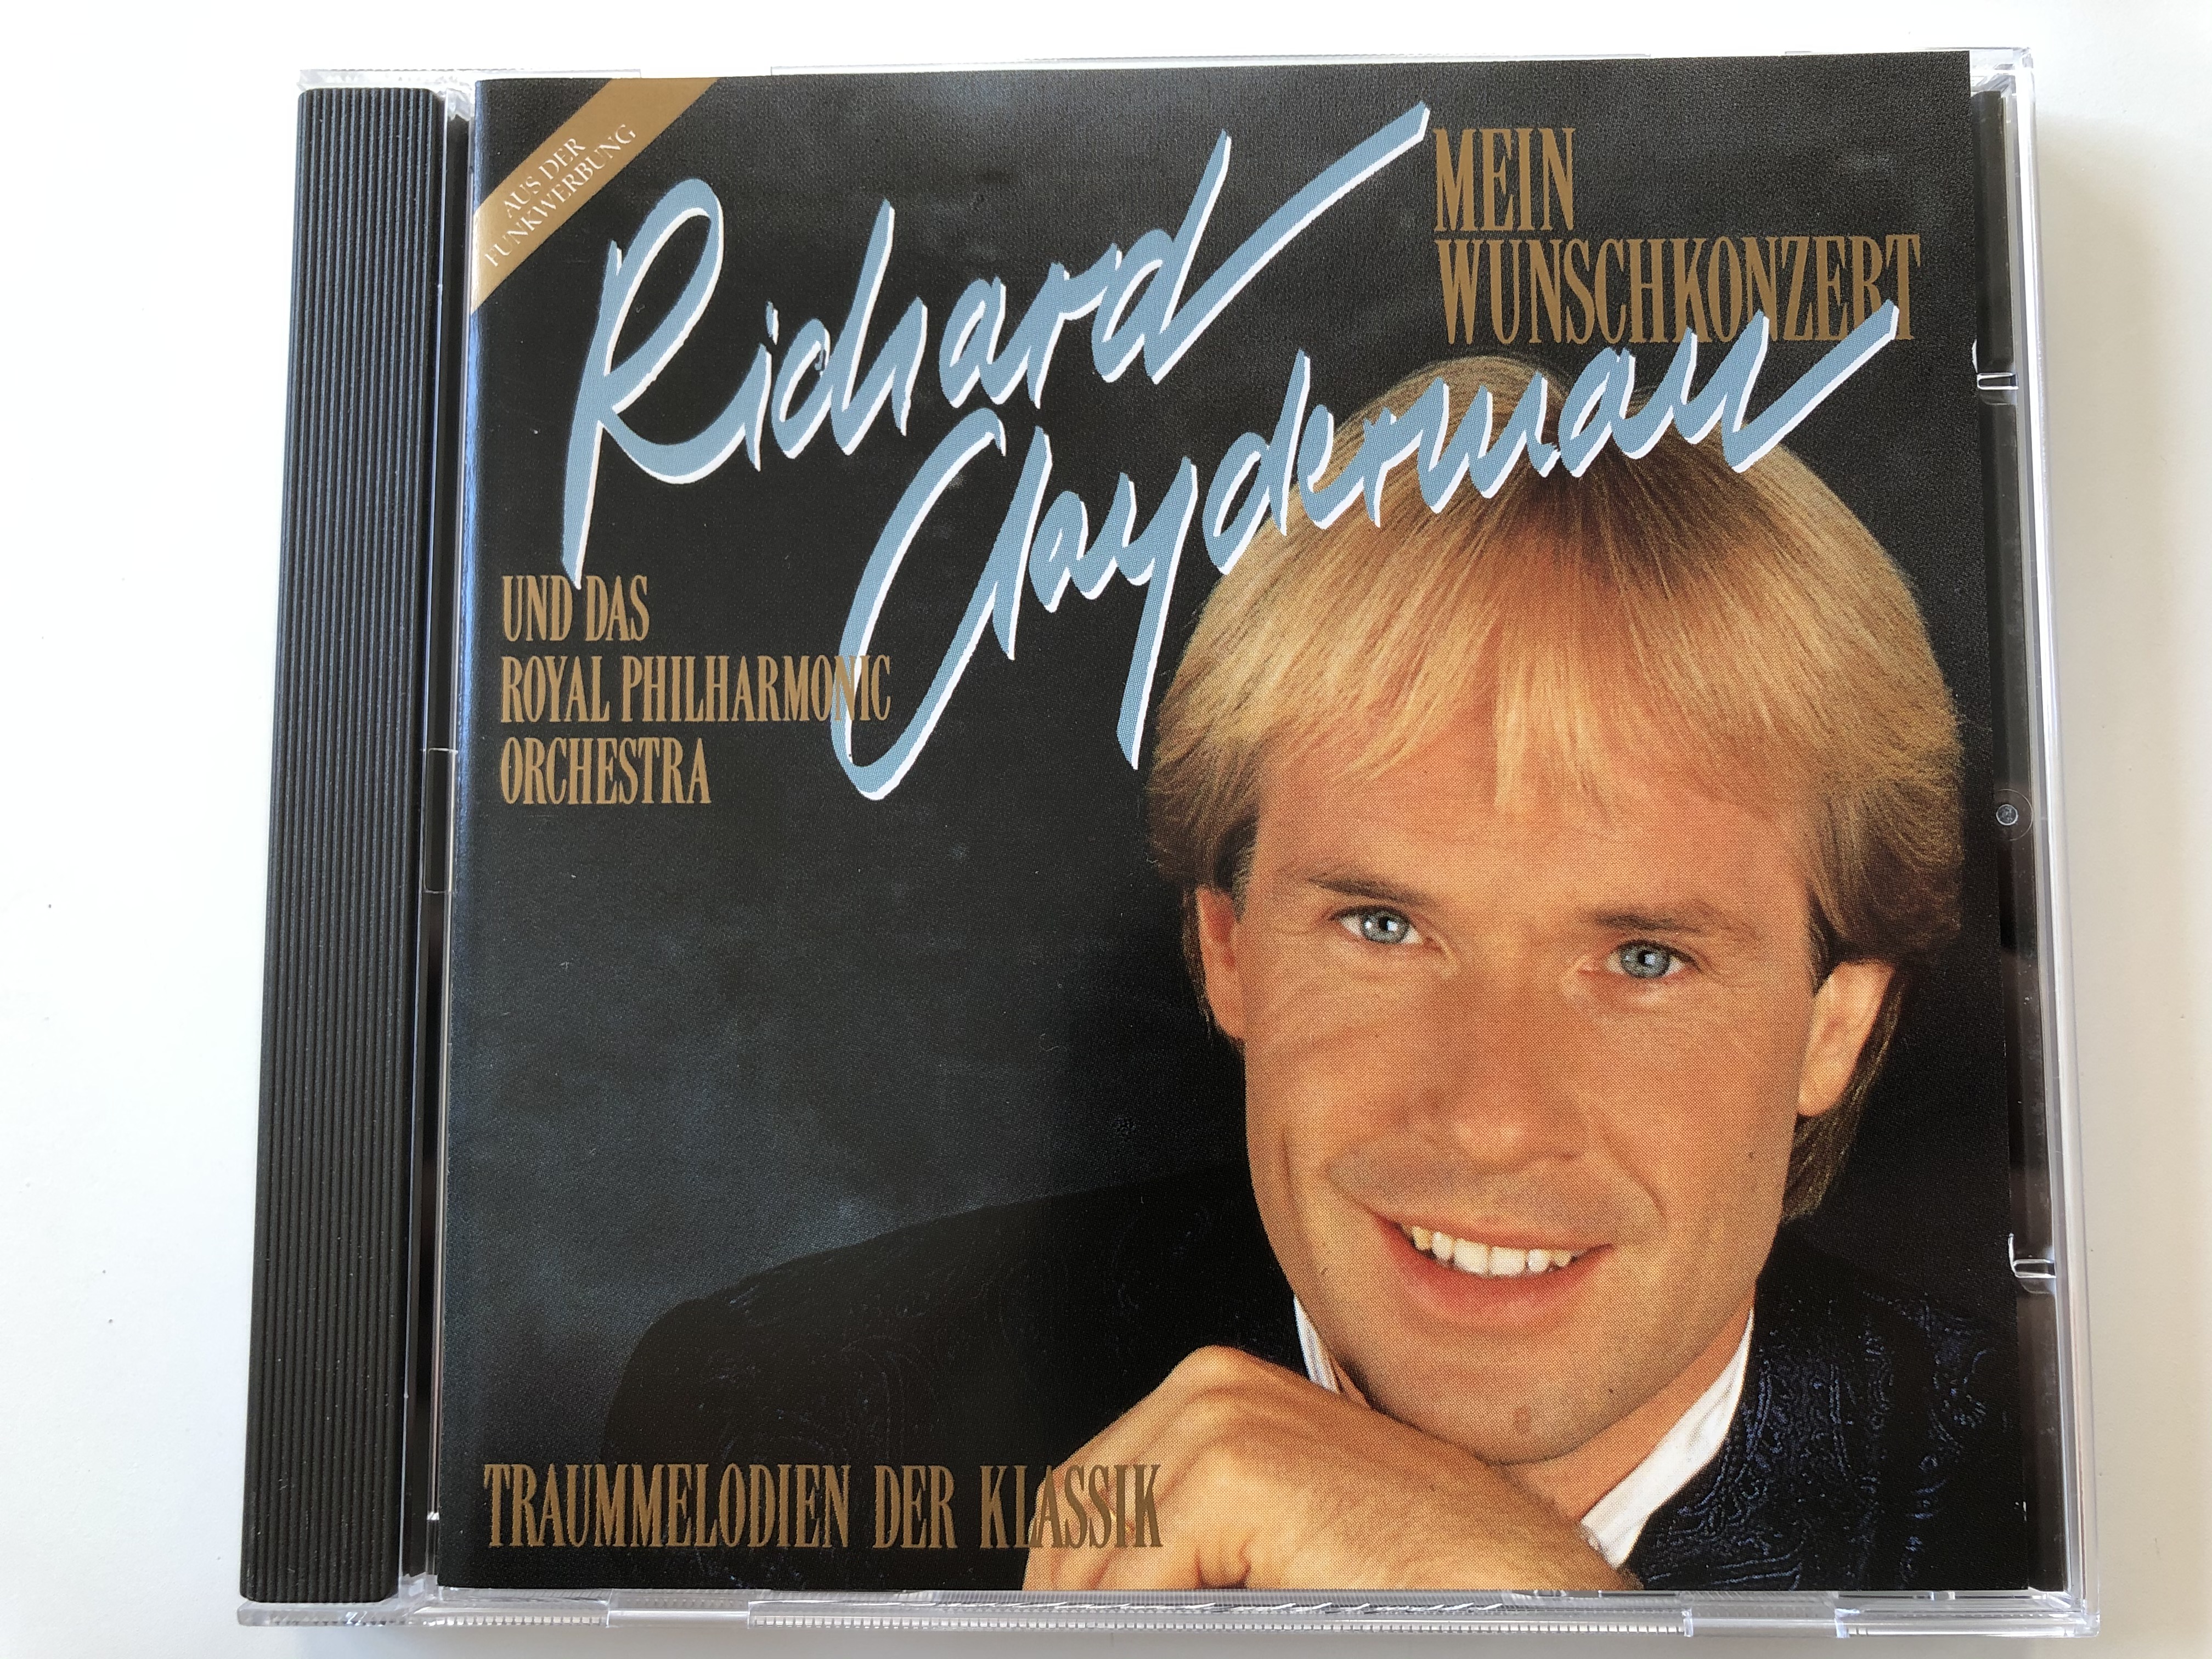 richard-clayderman-mein-wunschkonzert-und-das-royal-philharmonic-orchstra-traummelodien-der-klassik-polydor-audio-cd-1990-stereo-849-196-2-1-.jpg